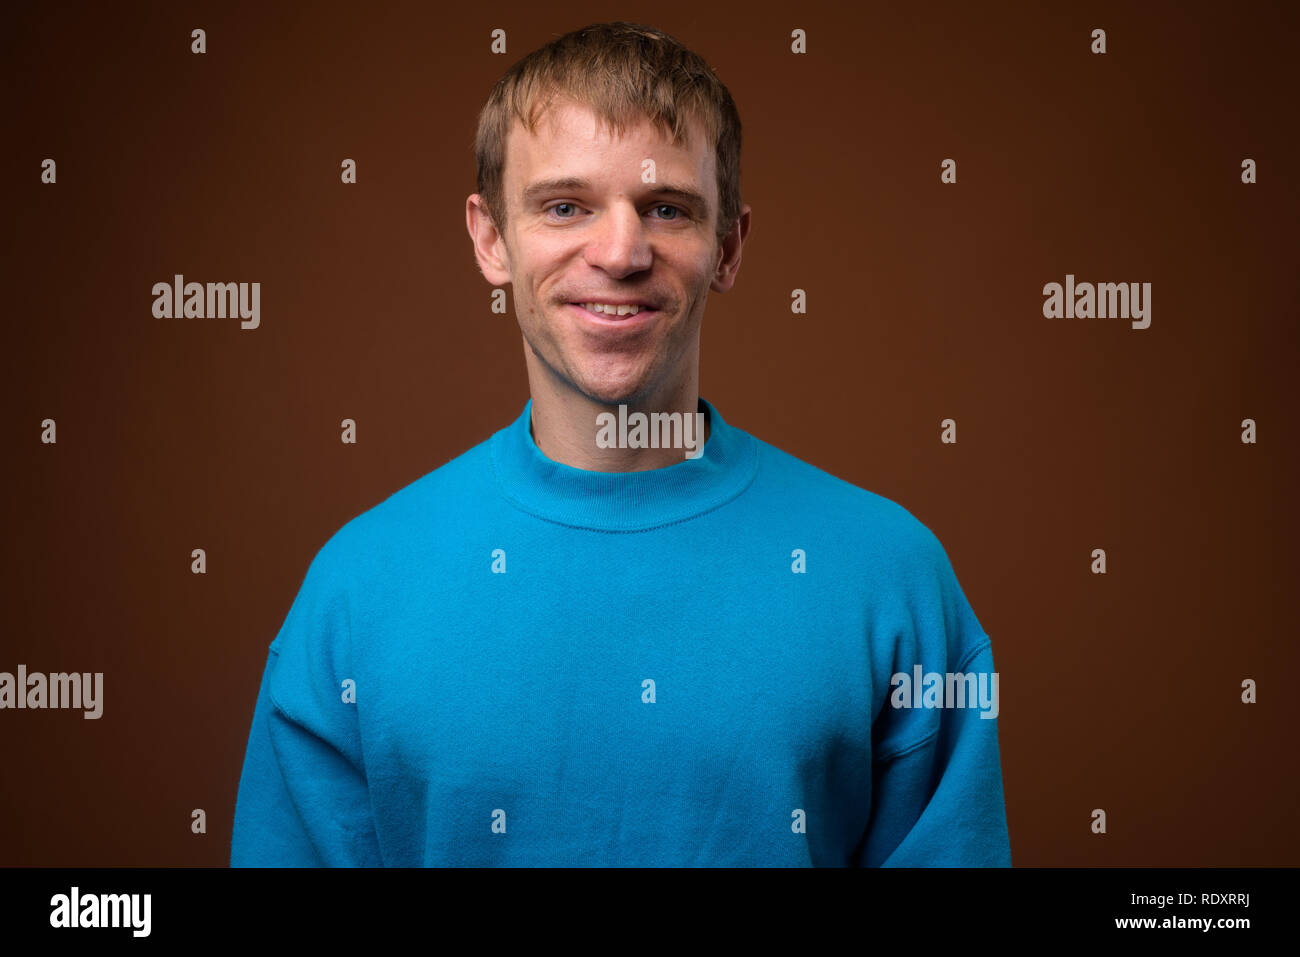 Hombre que llevaba un suéter azul contra el fondo marrón Foto de stock